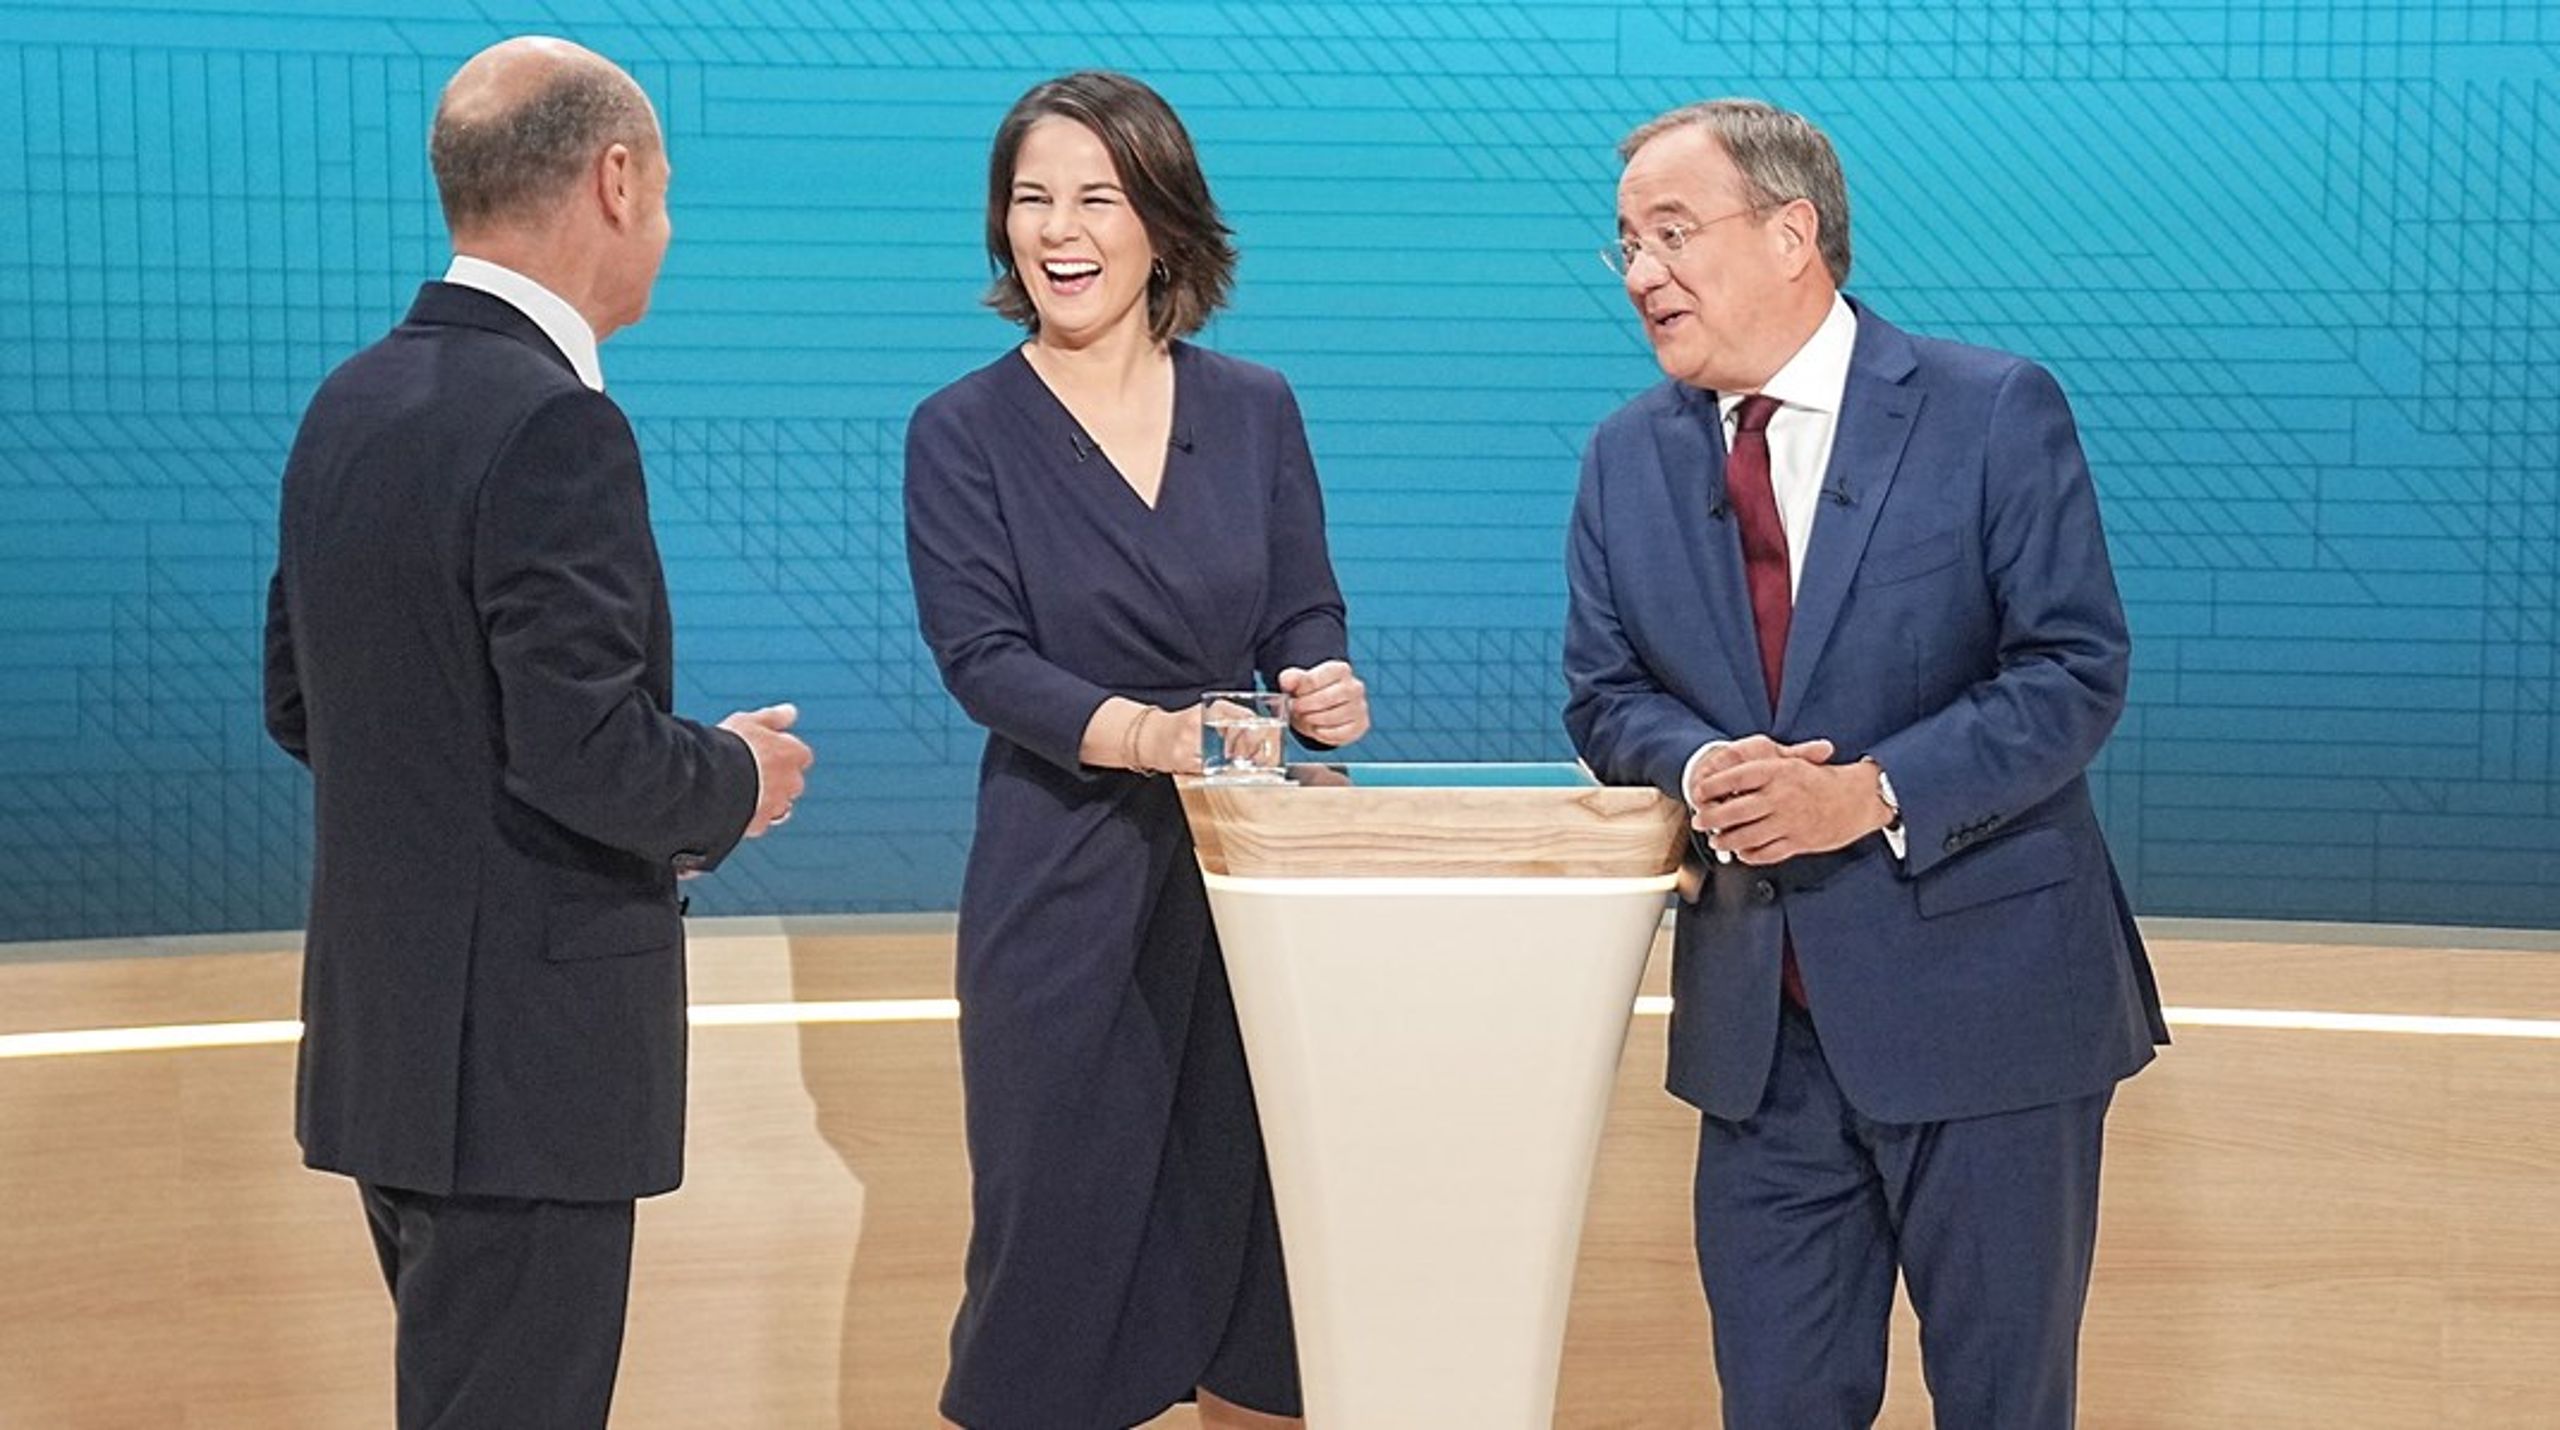 Fra venstre: Kandidaterne Olaf Scholz (SPD), Annalena Baerbock (Grønne) og Armin Laschet (CDU) gør klar til kanslerdebat på tysk tv søndag aften.&nbsp;